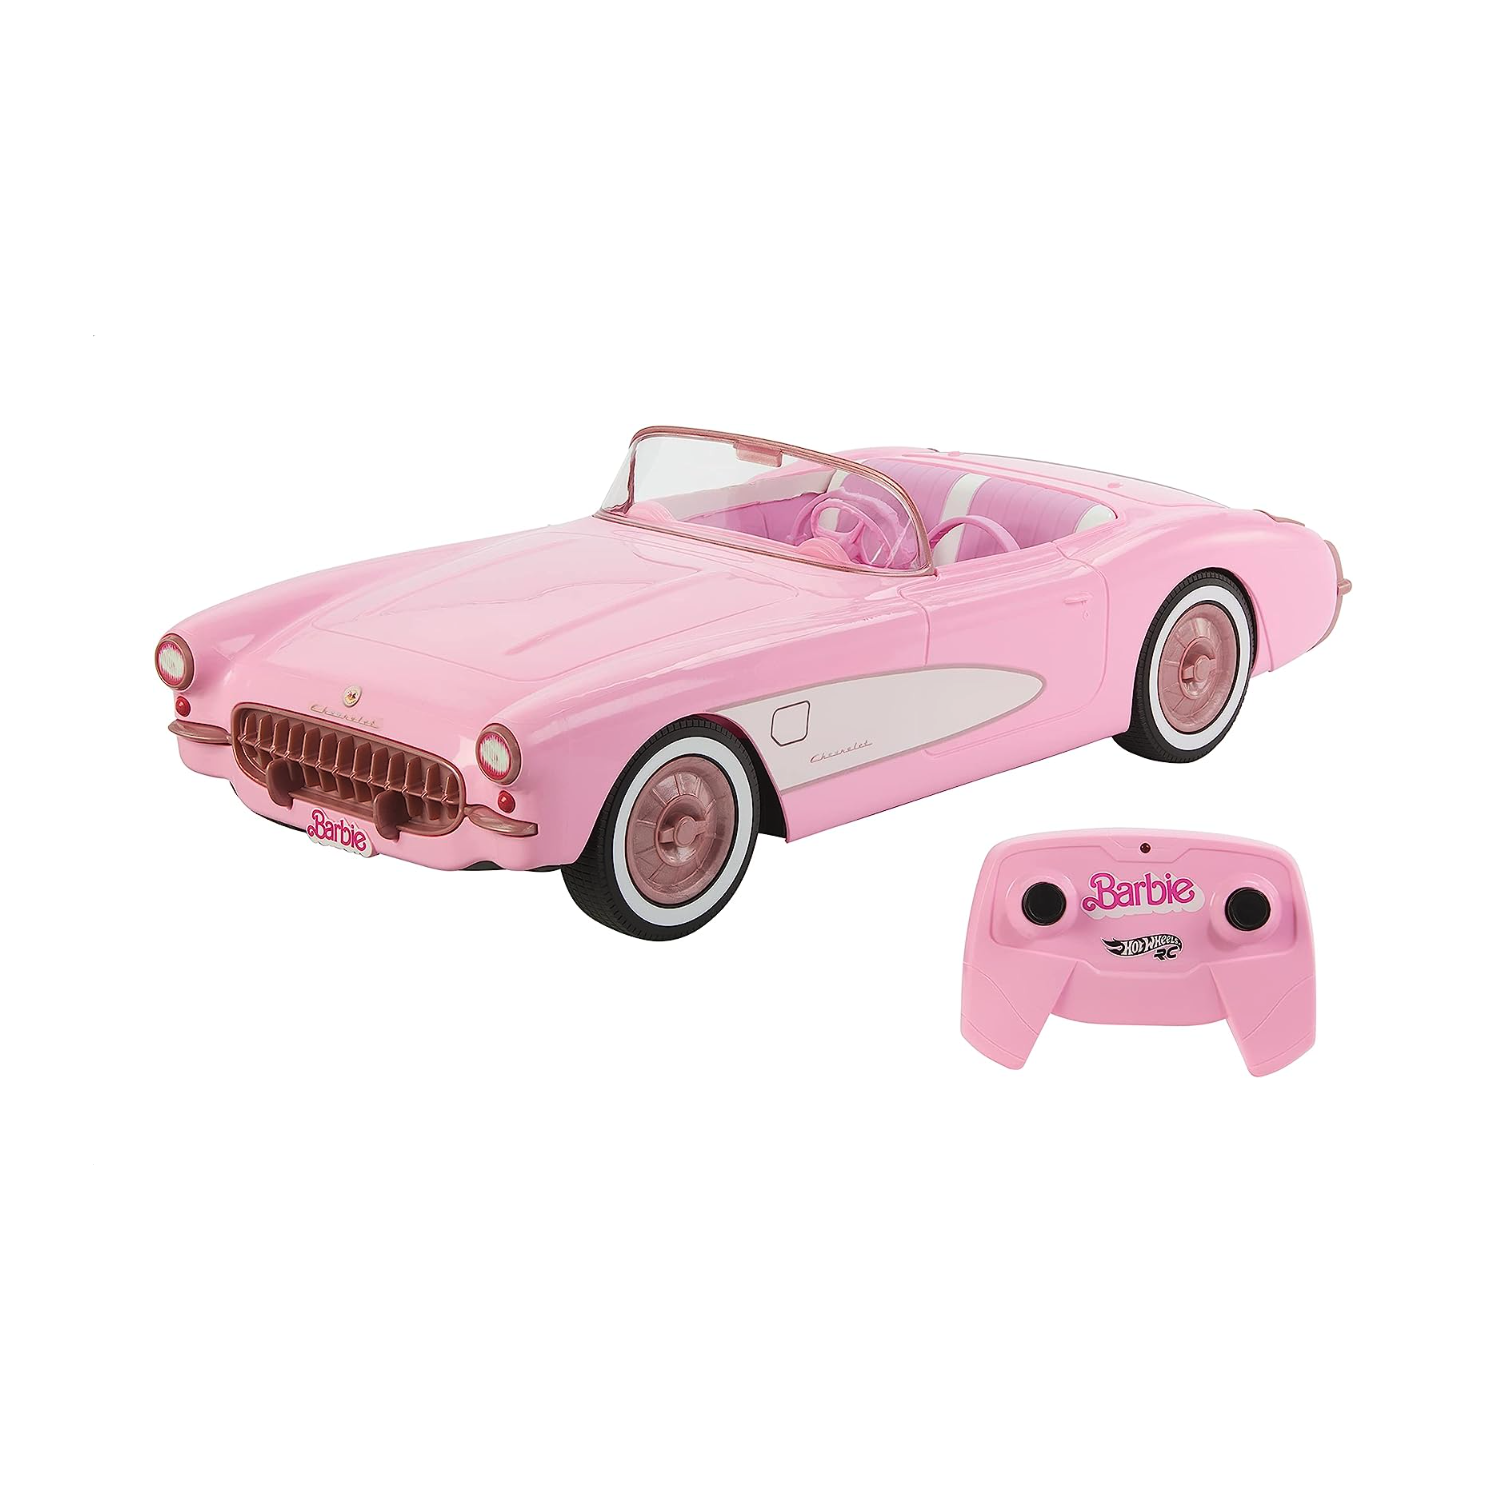 Hot Wheels – Barbie Corvette téléguidée, voiture jouet téléguidée